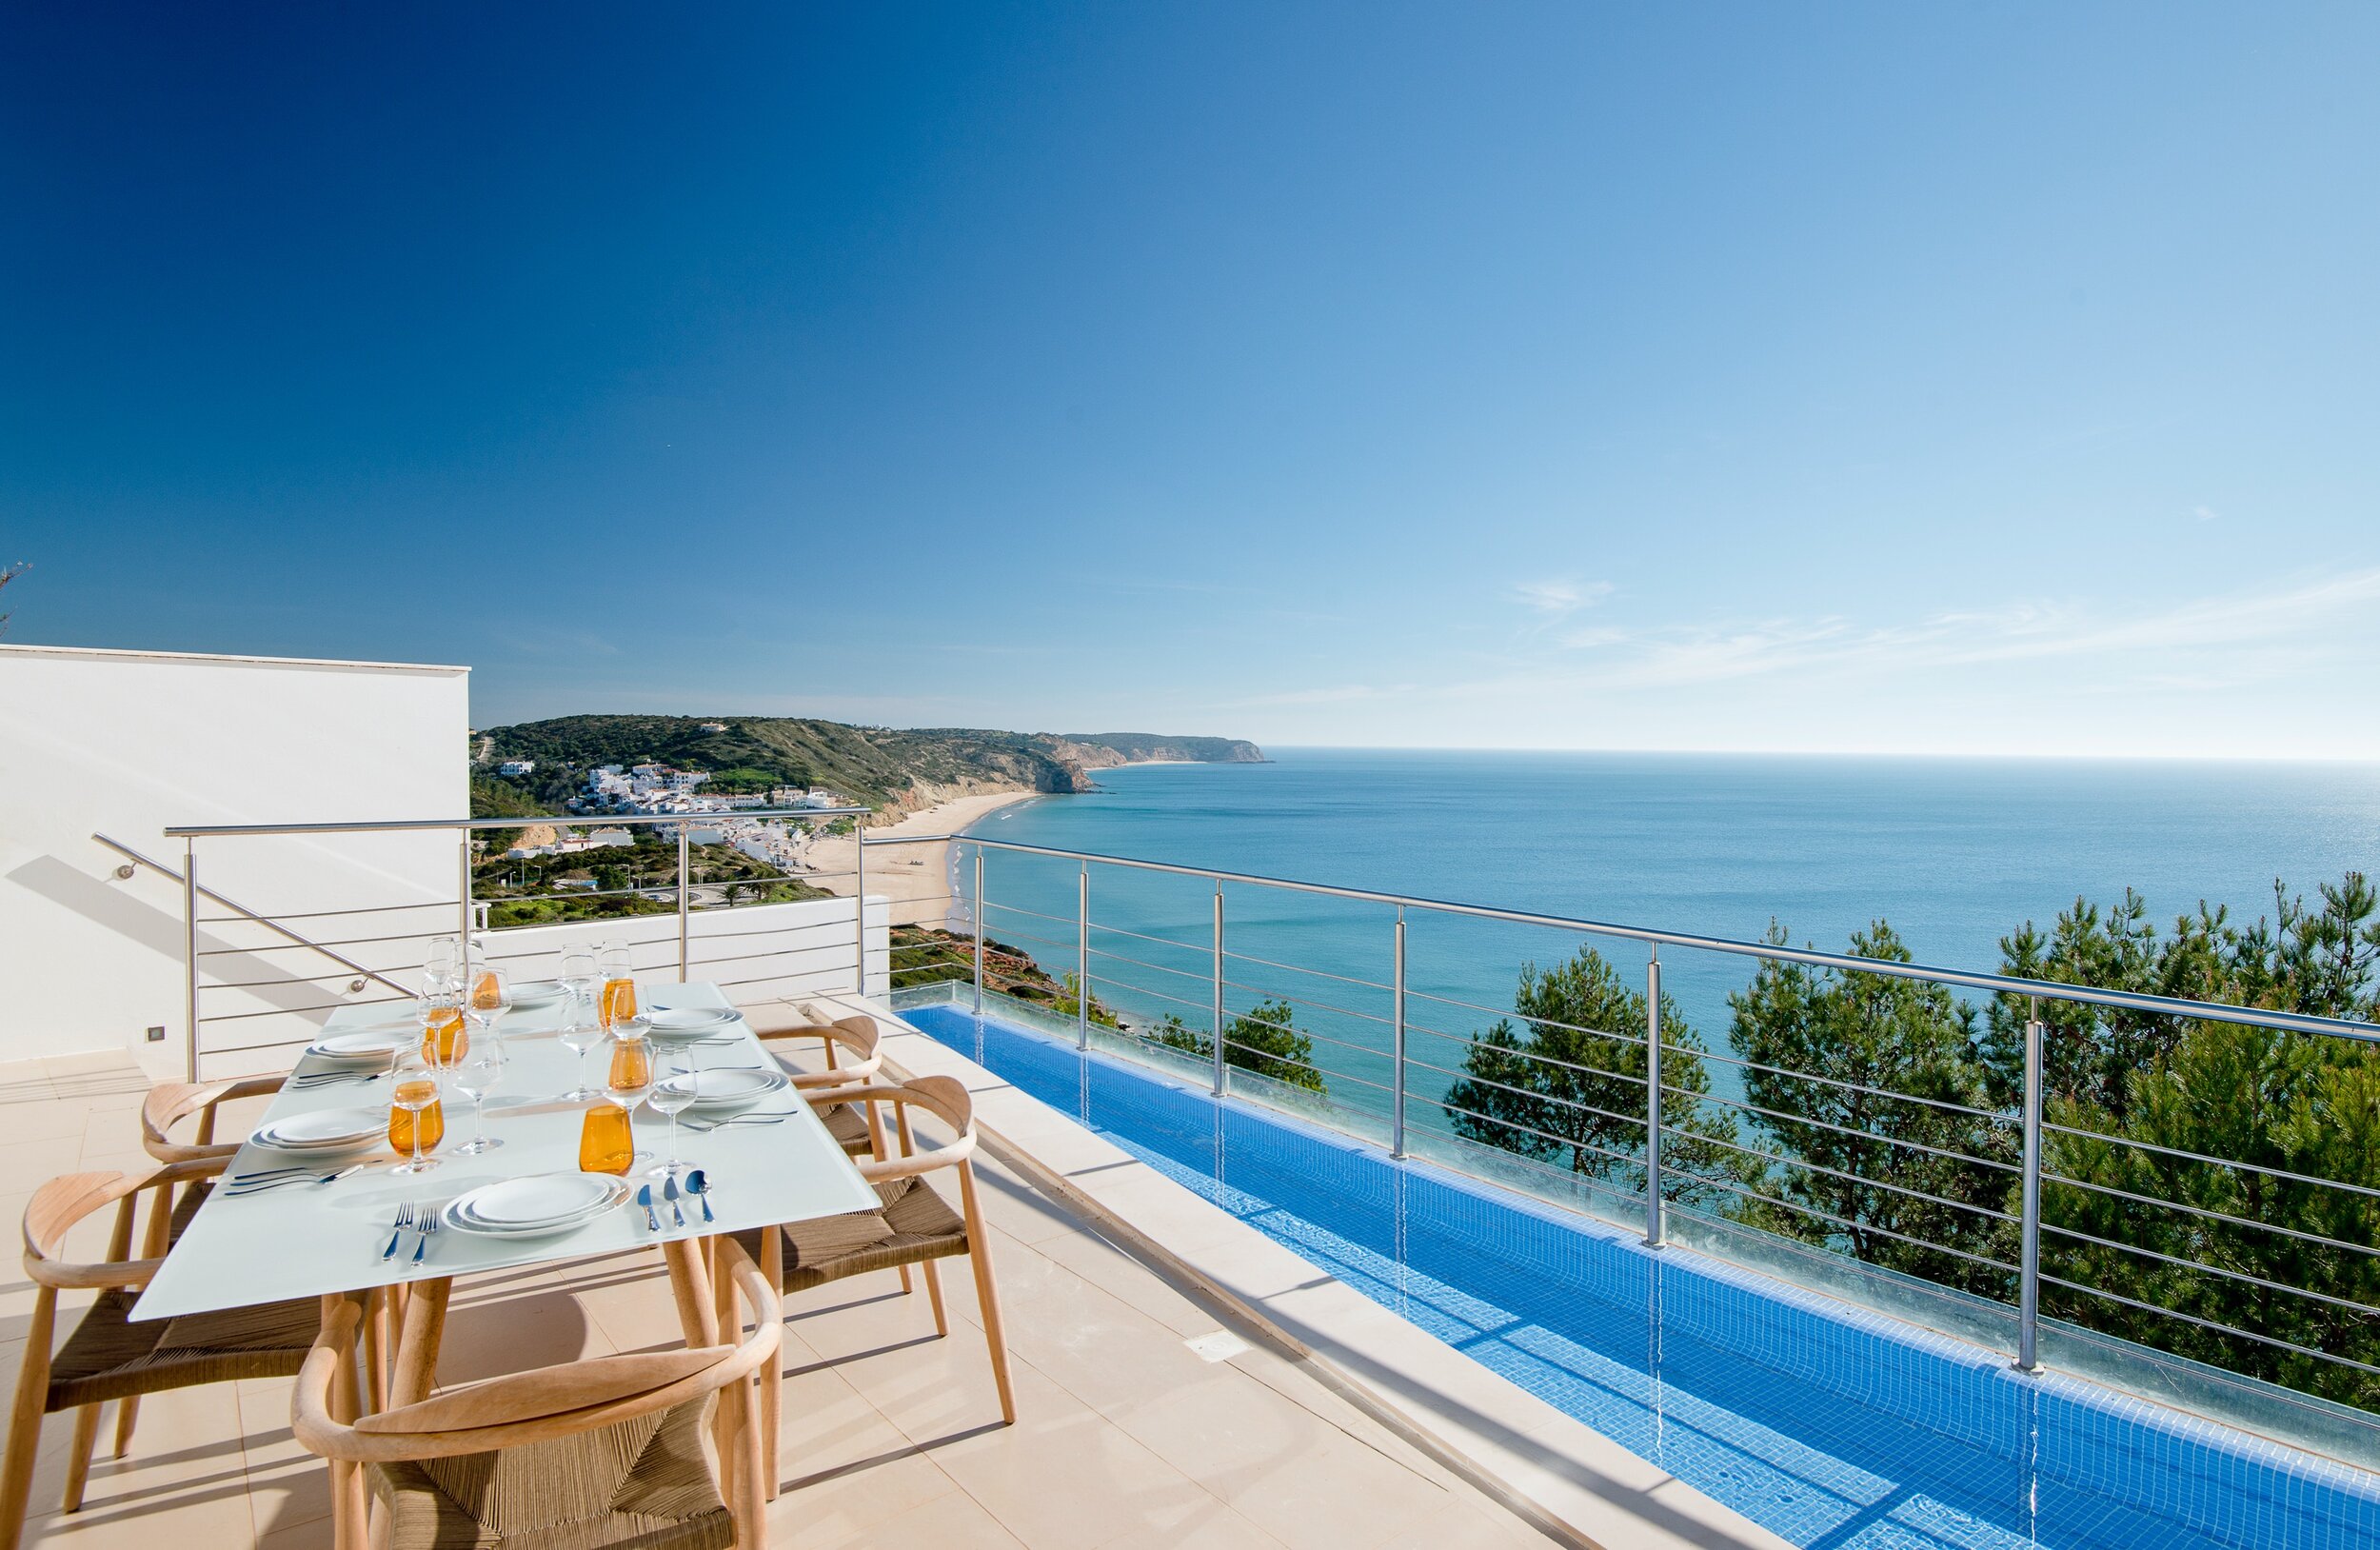 Villa Mar Azul - Exterior dining table.jpg